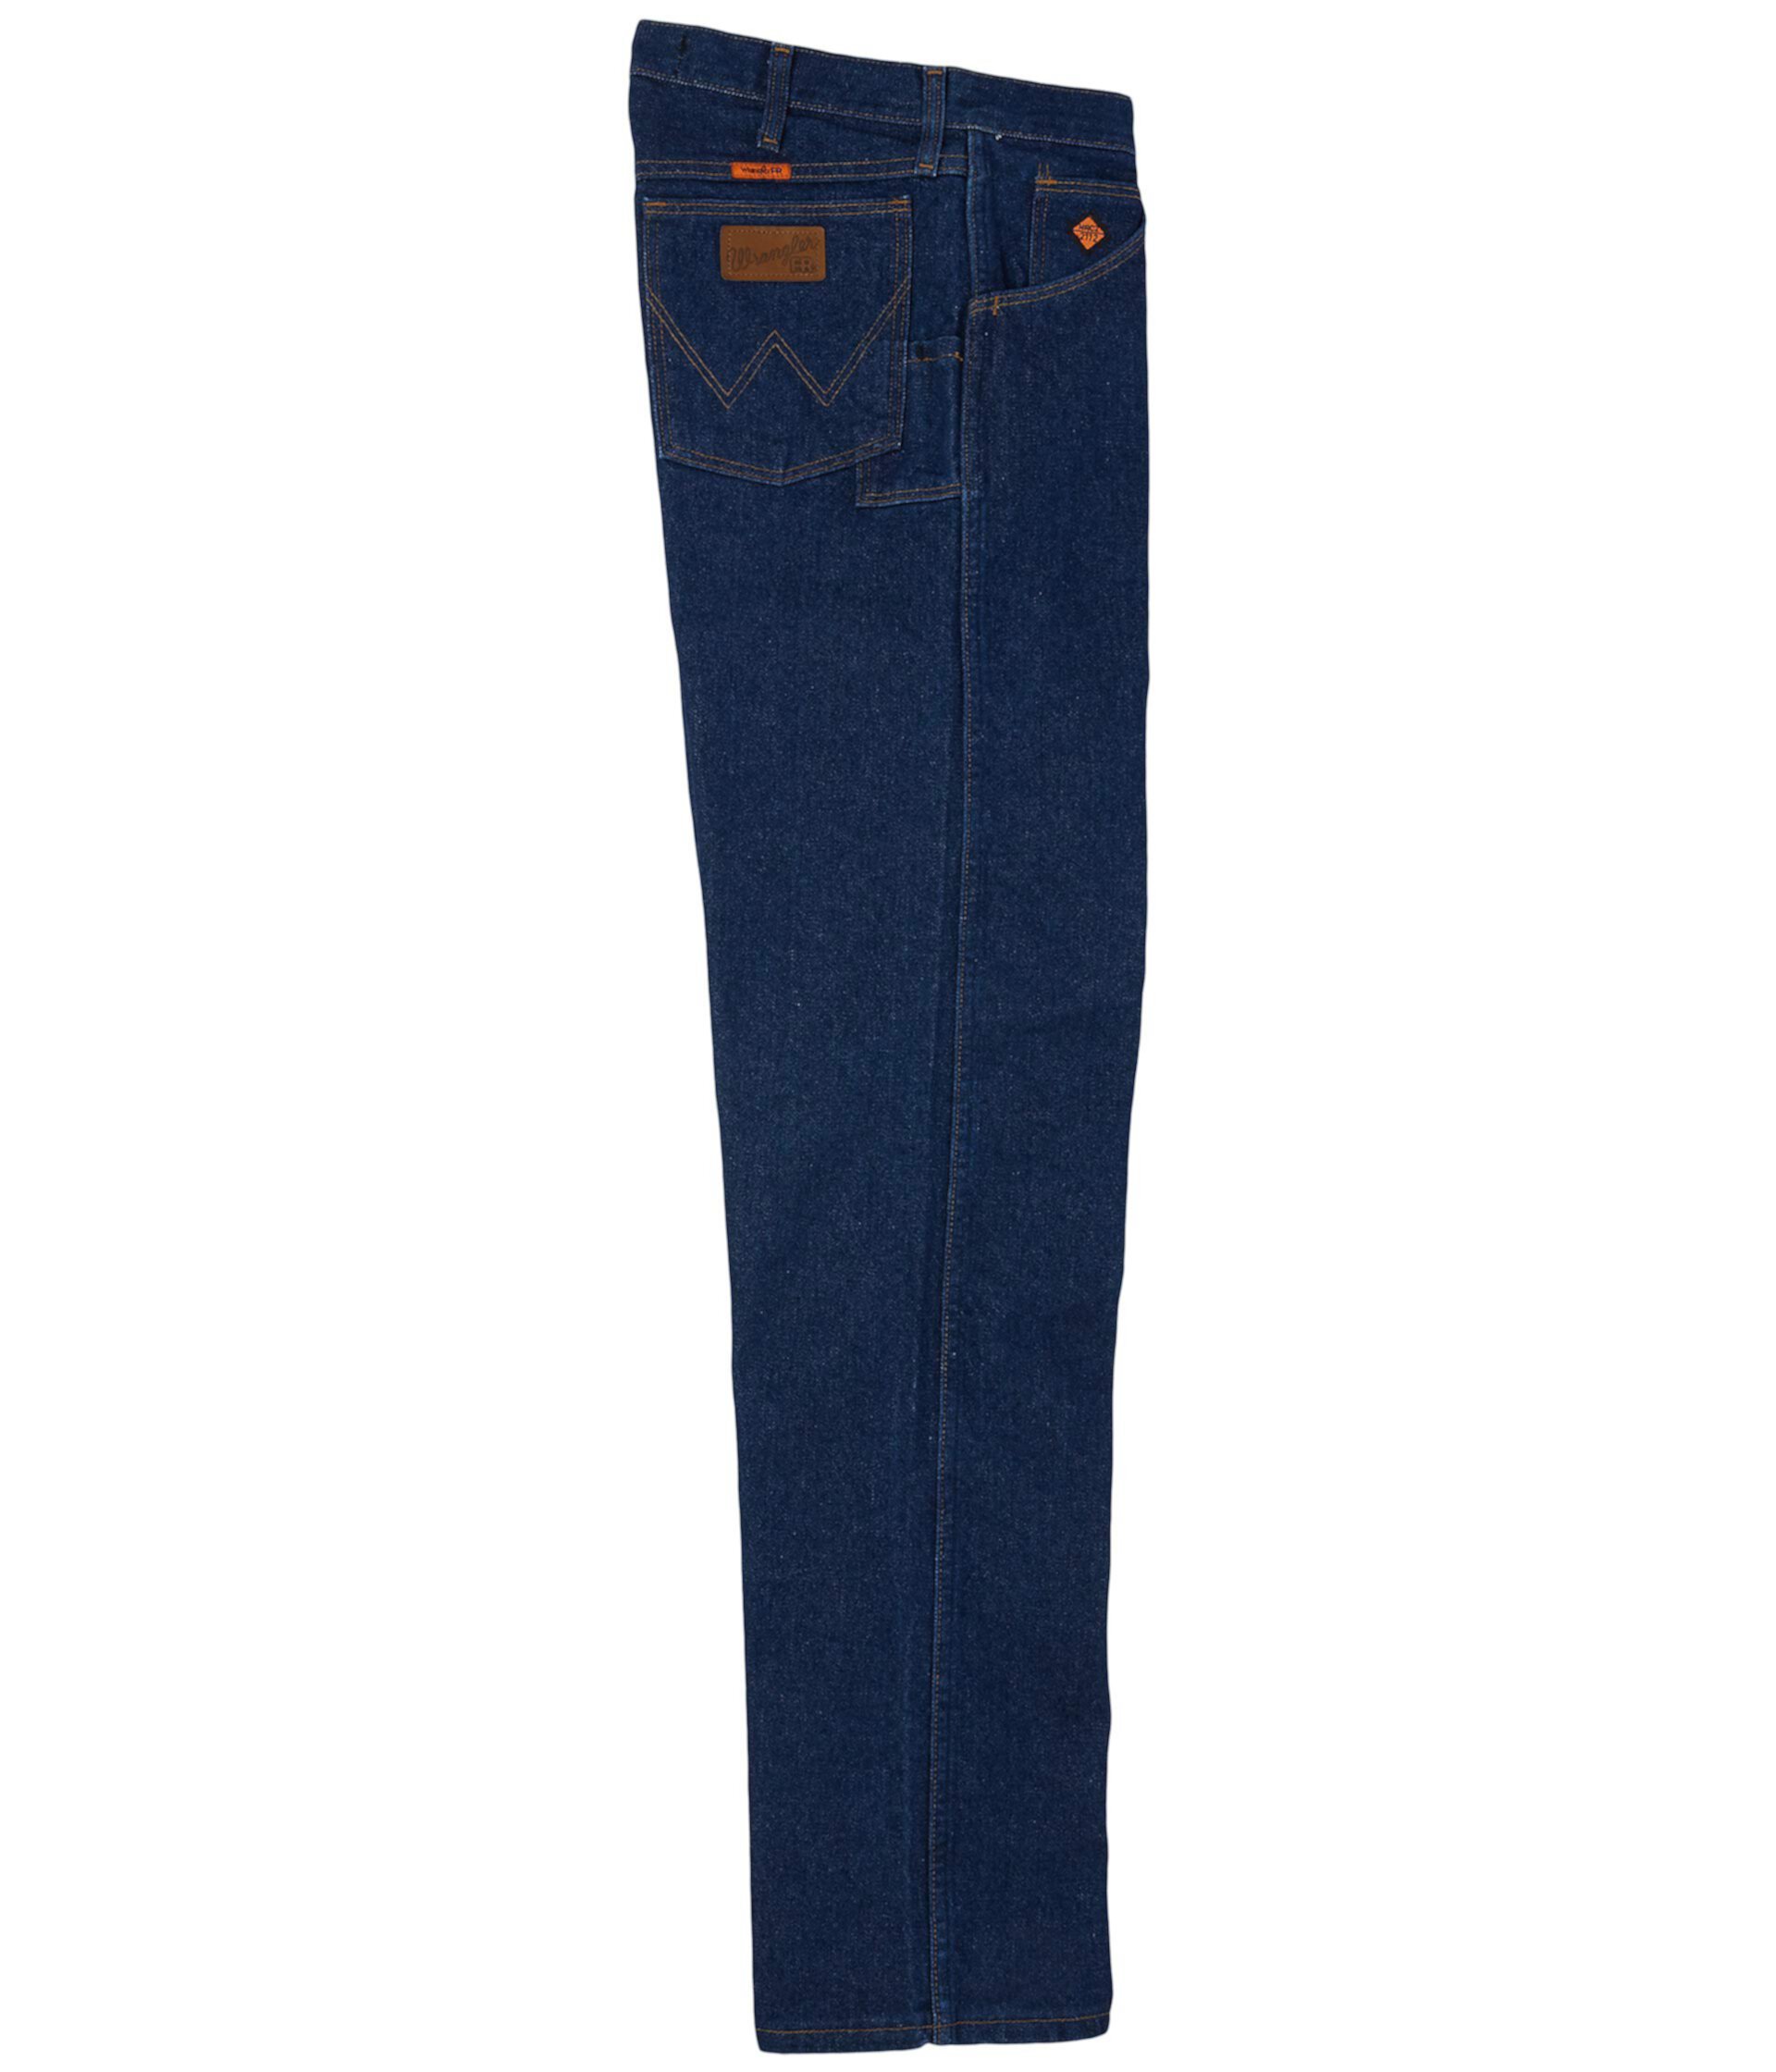 Большие и высокие джинсы Wrangler для мужчин, устойчивые к огню, свободного покроя Wrangler